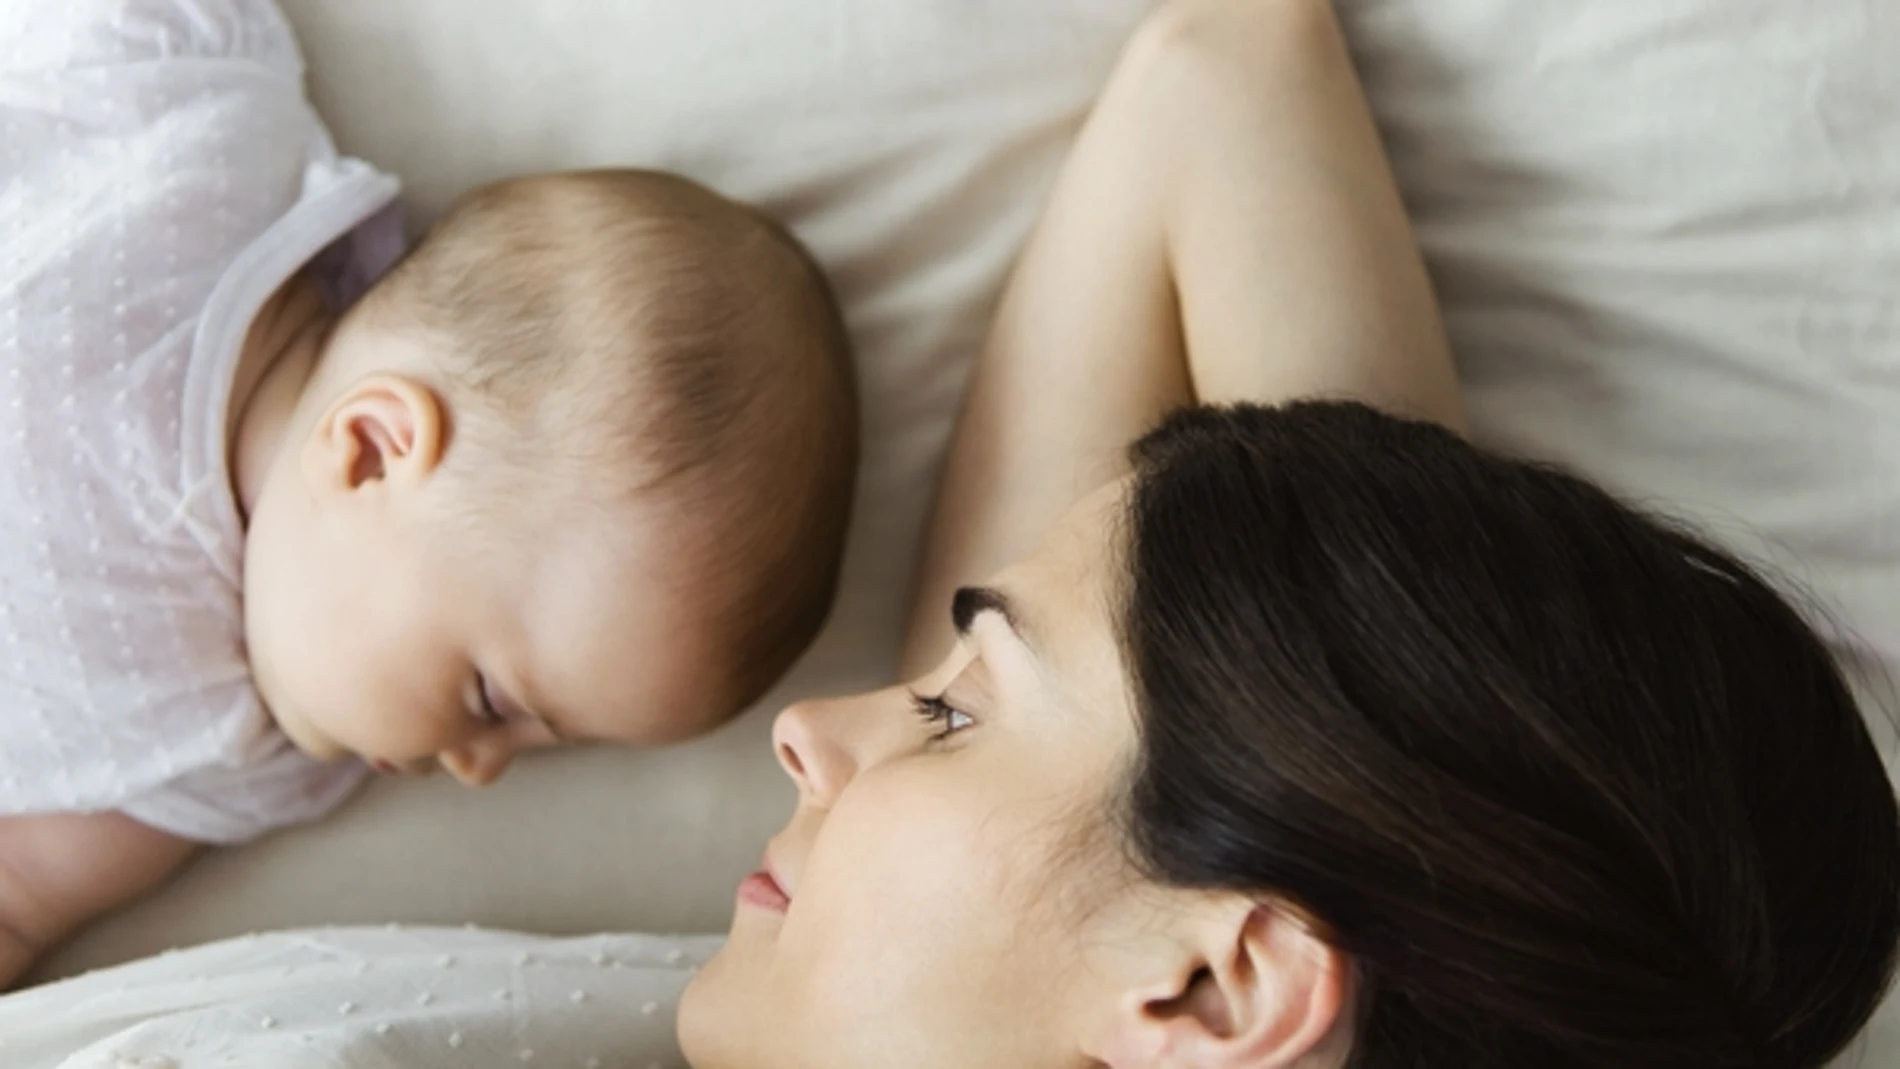 “Dejar llorar a un bebé para que aprenda a dormir tiene efectos muy negativos a largo plazo”